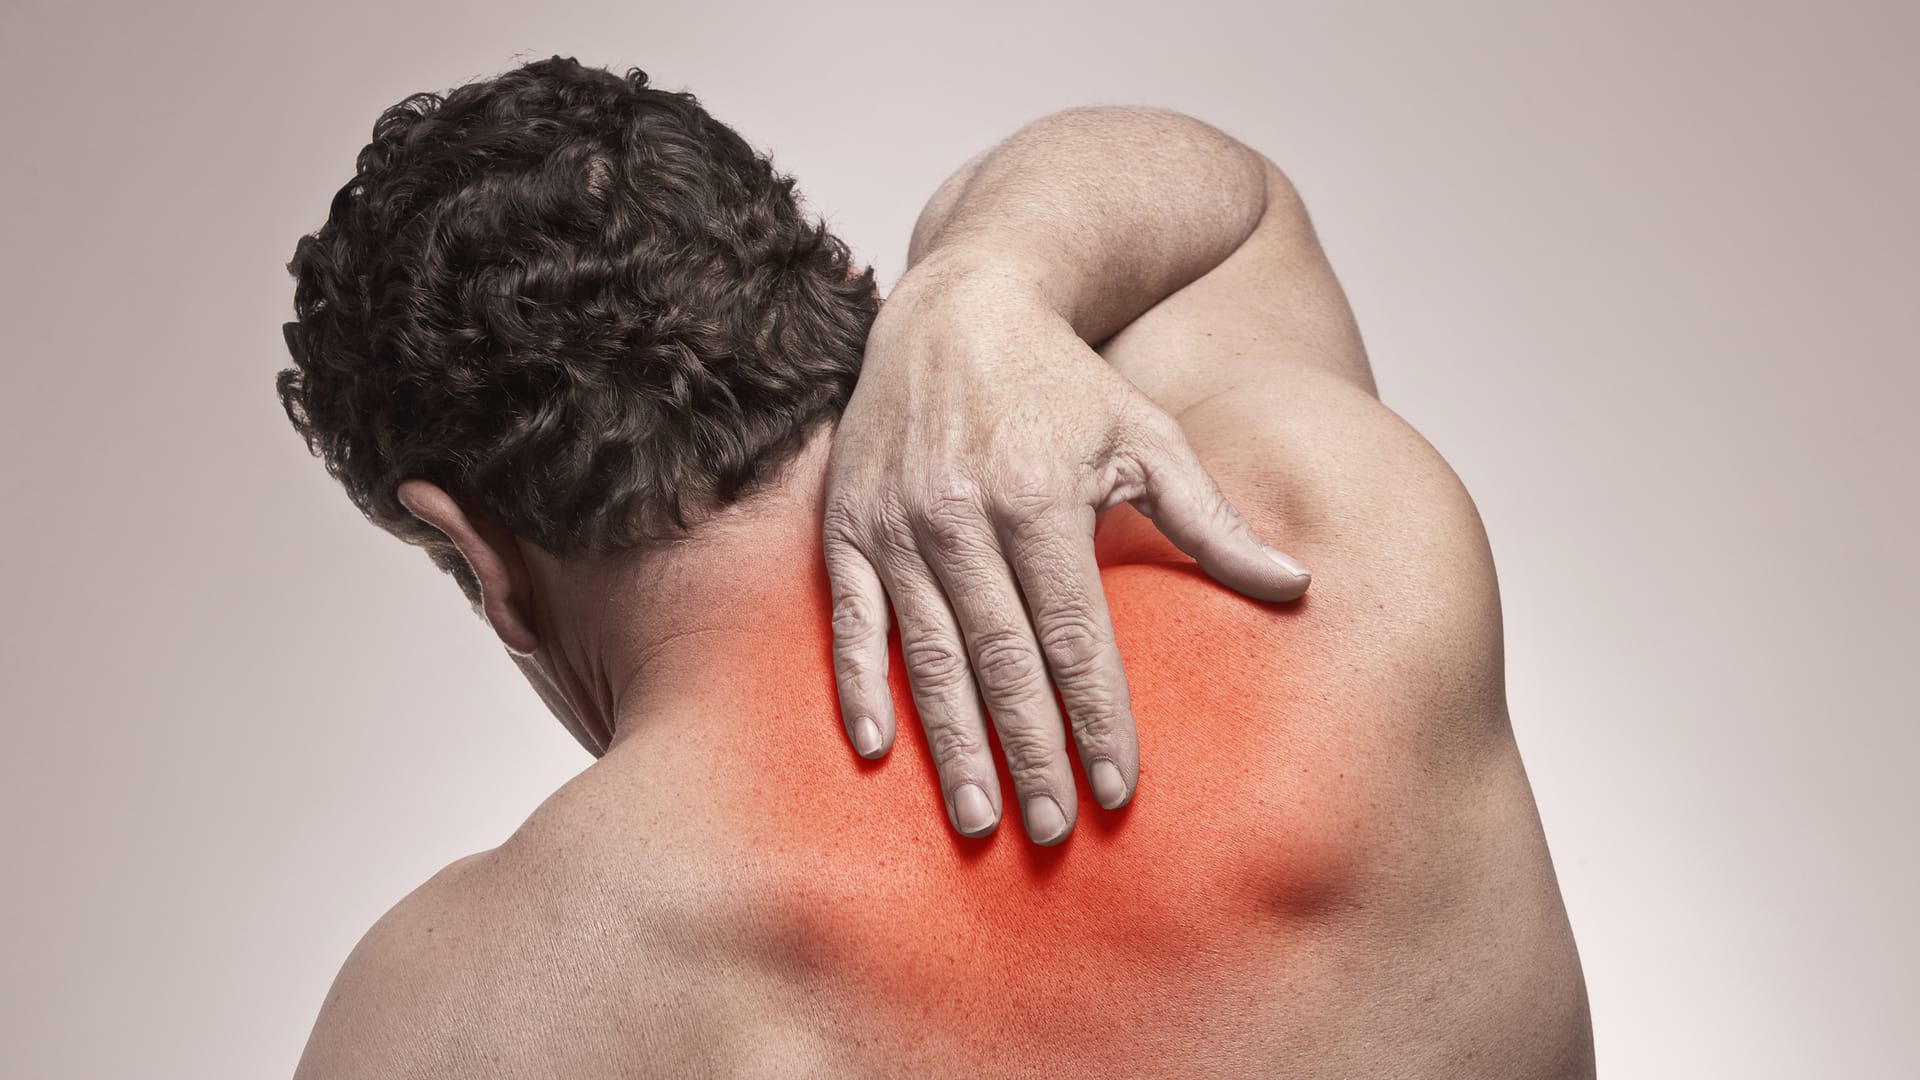 Жжение в спине в области позвоночника: причины и лечение, ощущение жжения  кожи в пояснице | Клиника Temed